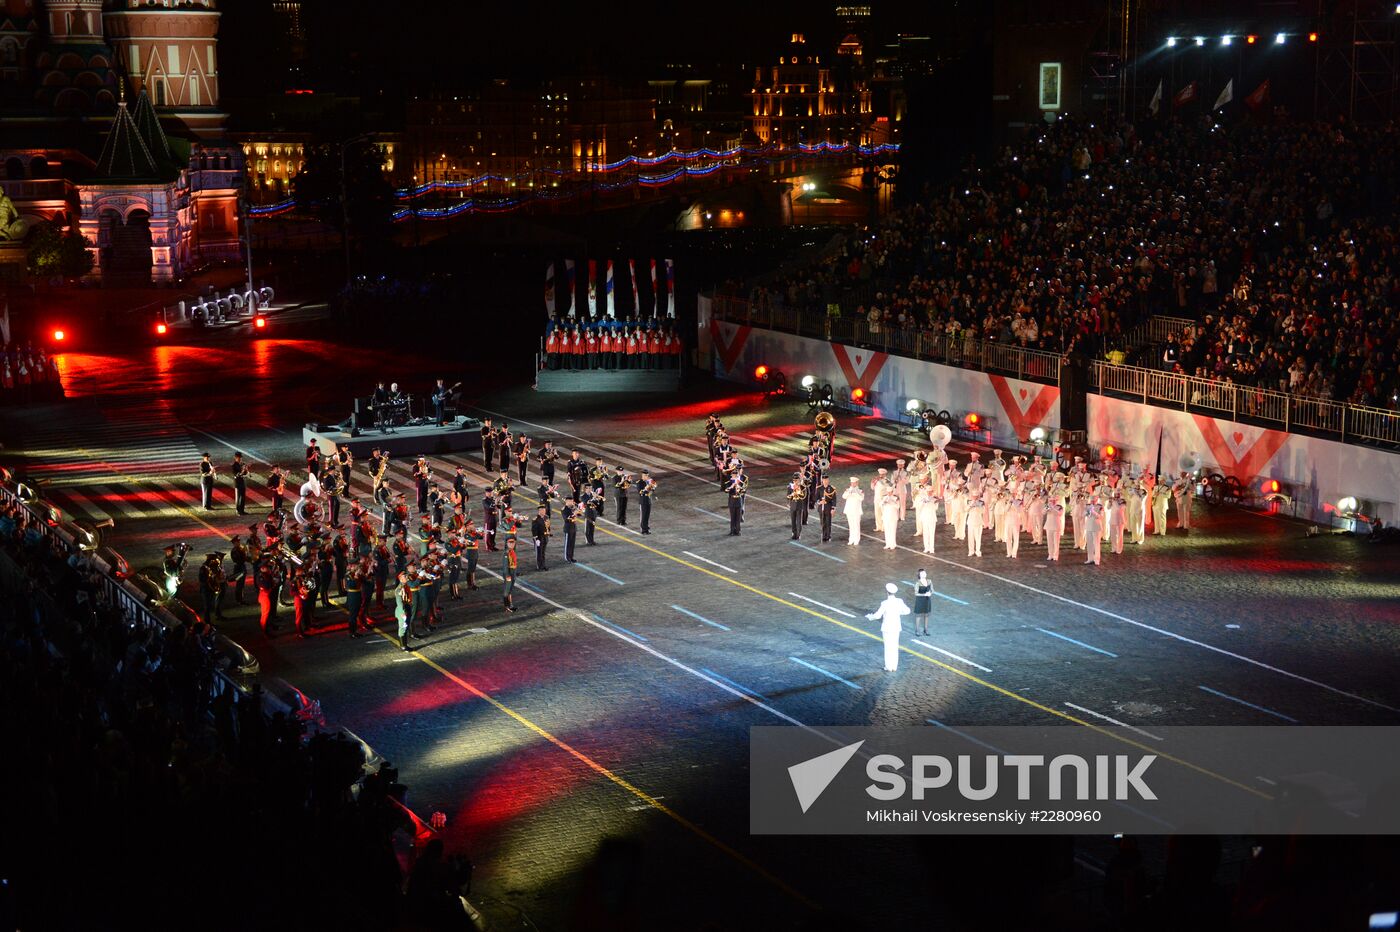 Closing of Spasskaya Tower Festival